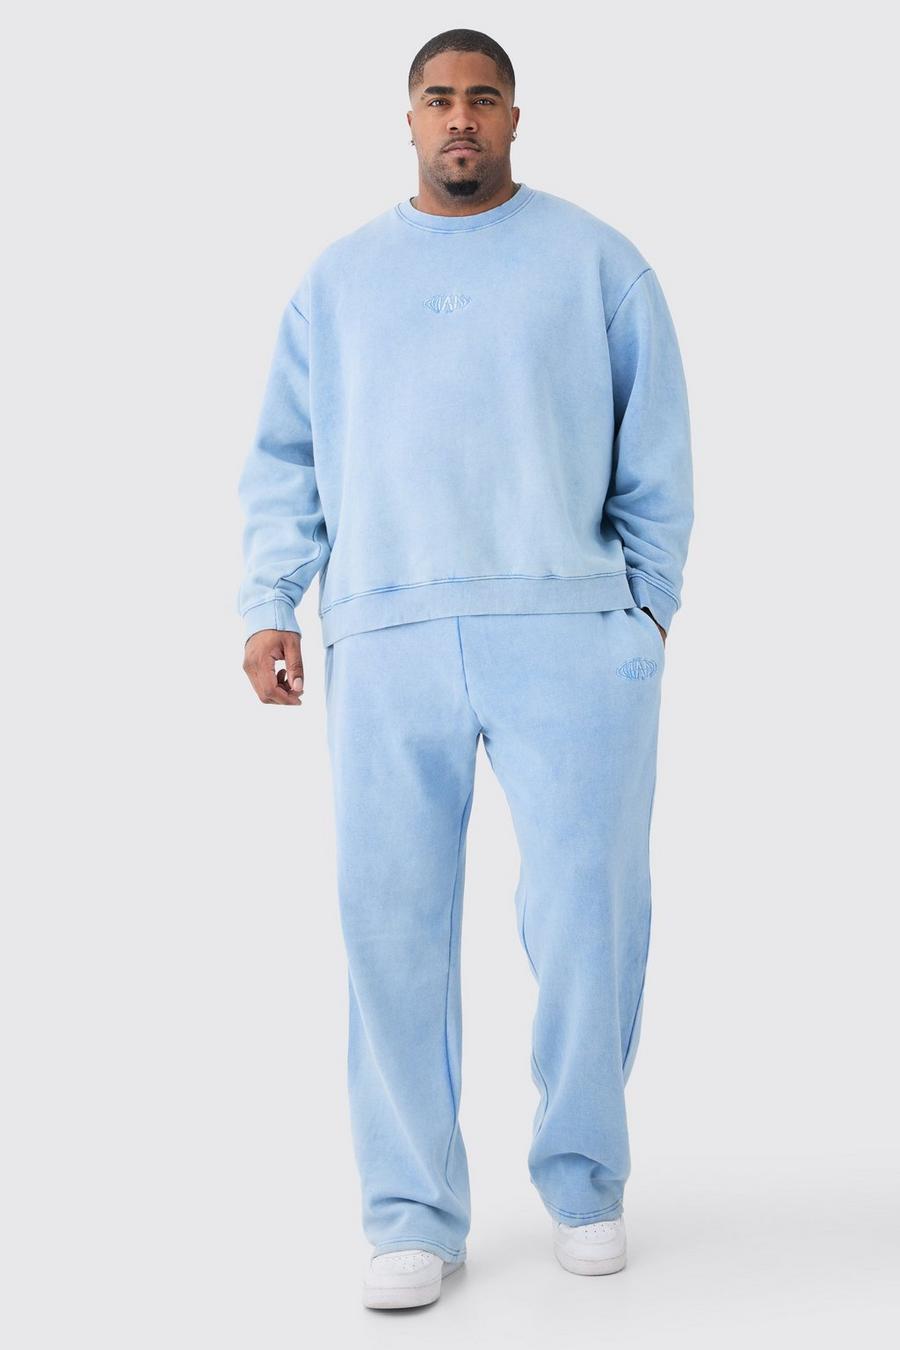 Cornflower blue Plus Man Oversized Boxy Laundered Wash Sweatshirt Tracksuit